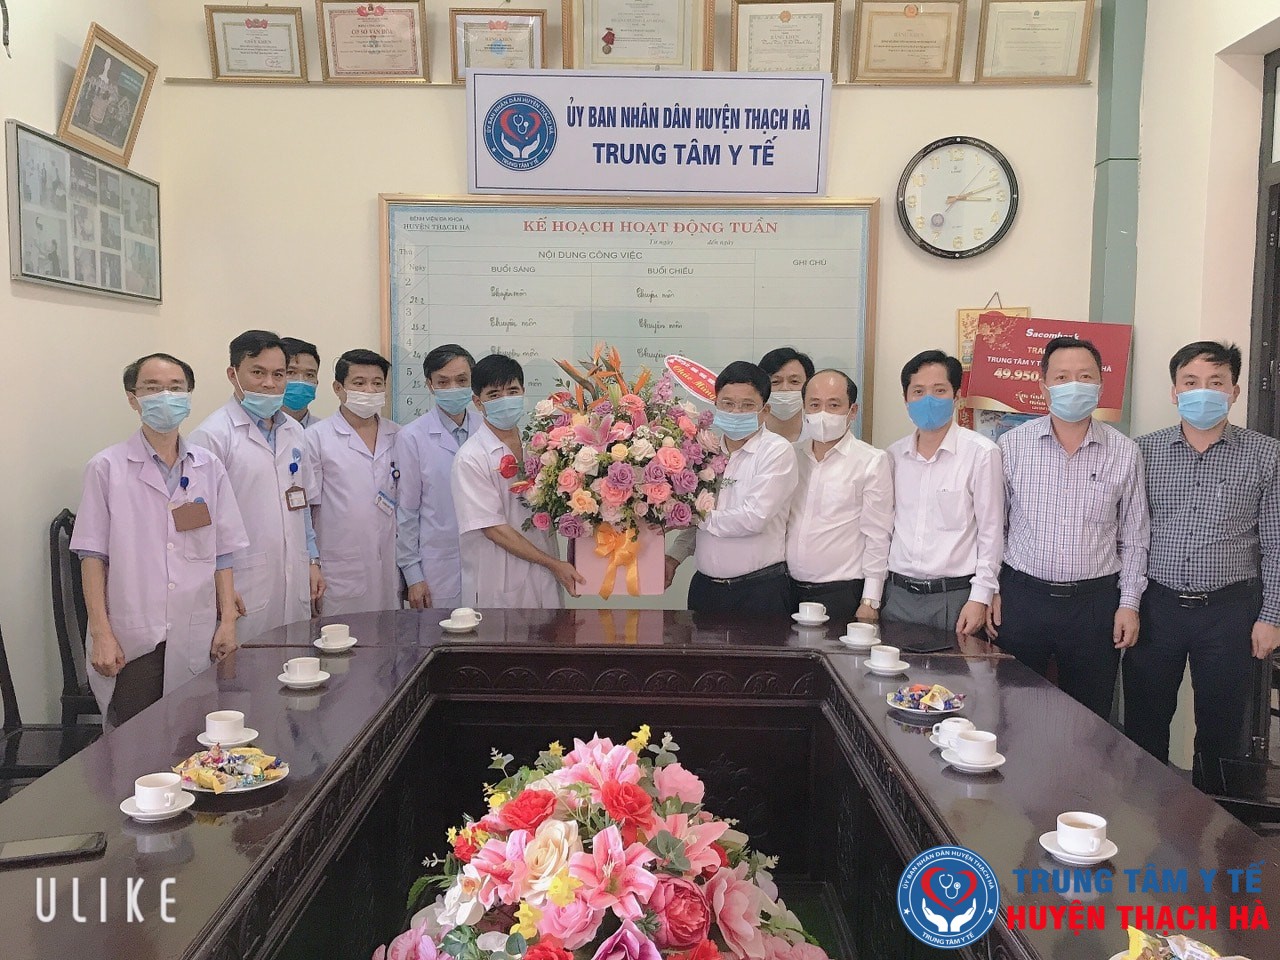 Lãnh đạo huyện tặng hoa chúc mừng 66 năm ngày Thầy thuốc Việt Nam (27/02/1955 - 27/02/2021)